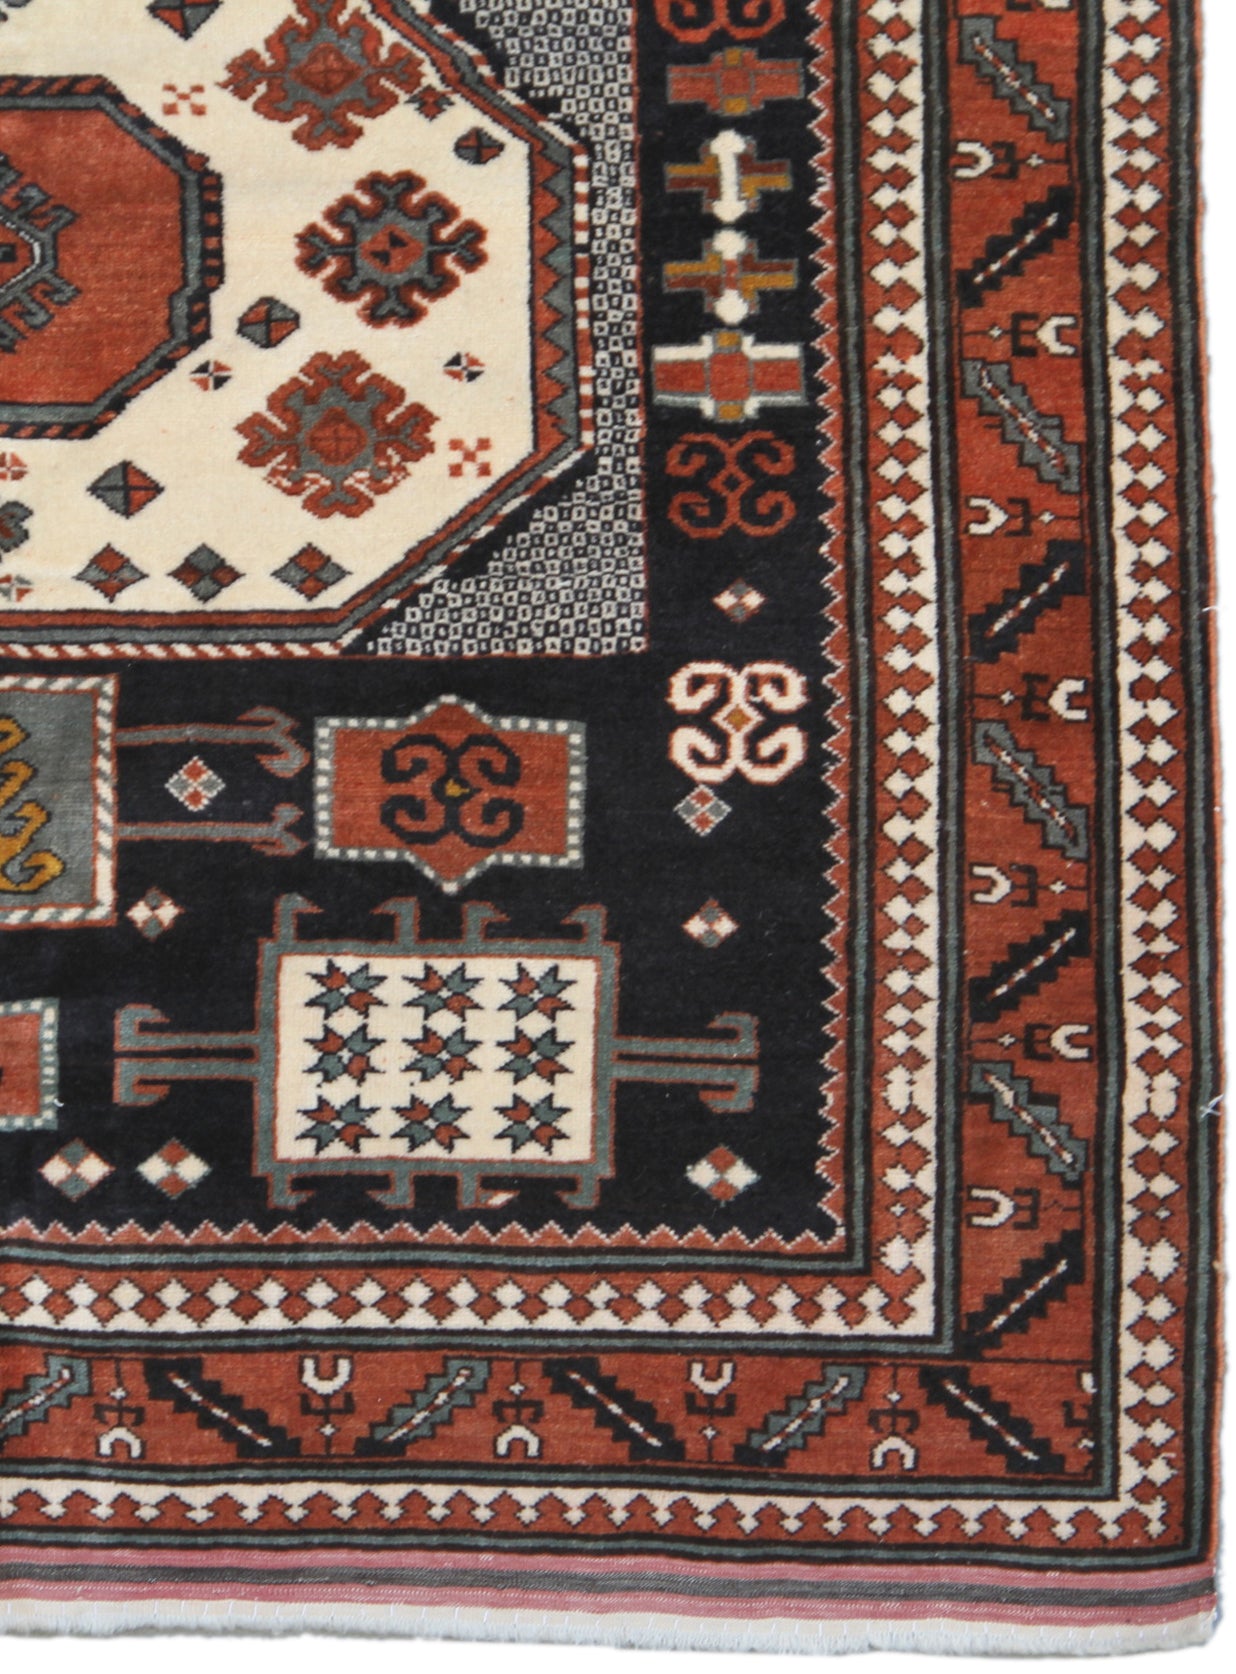 4'x4' Square Fine Quality Wool Western Afghanistan Karachoff Design Rug